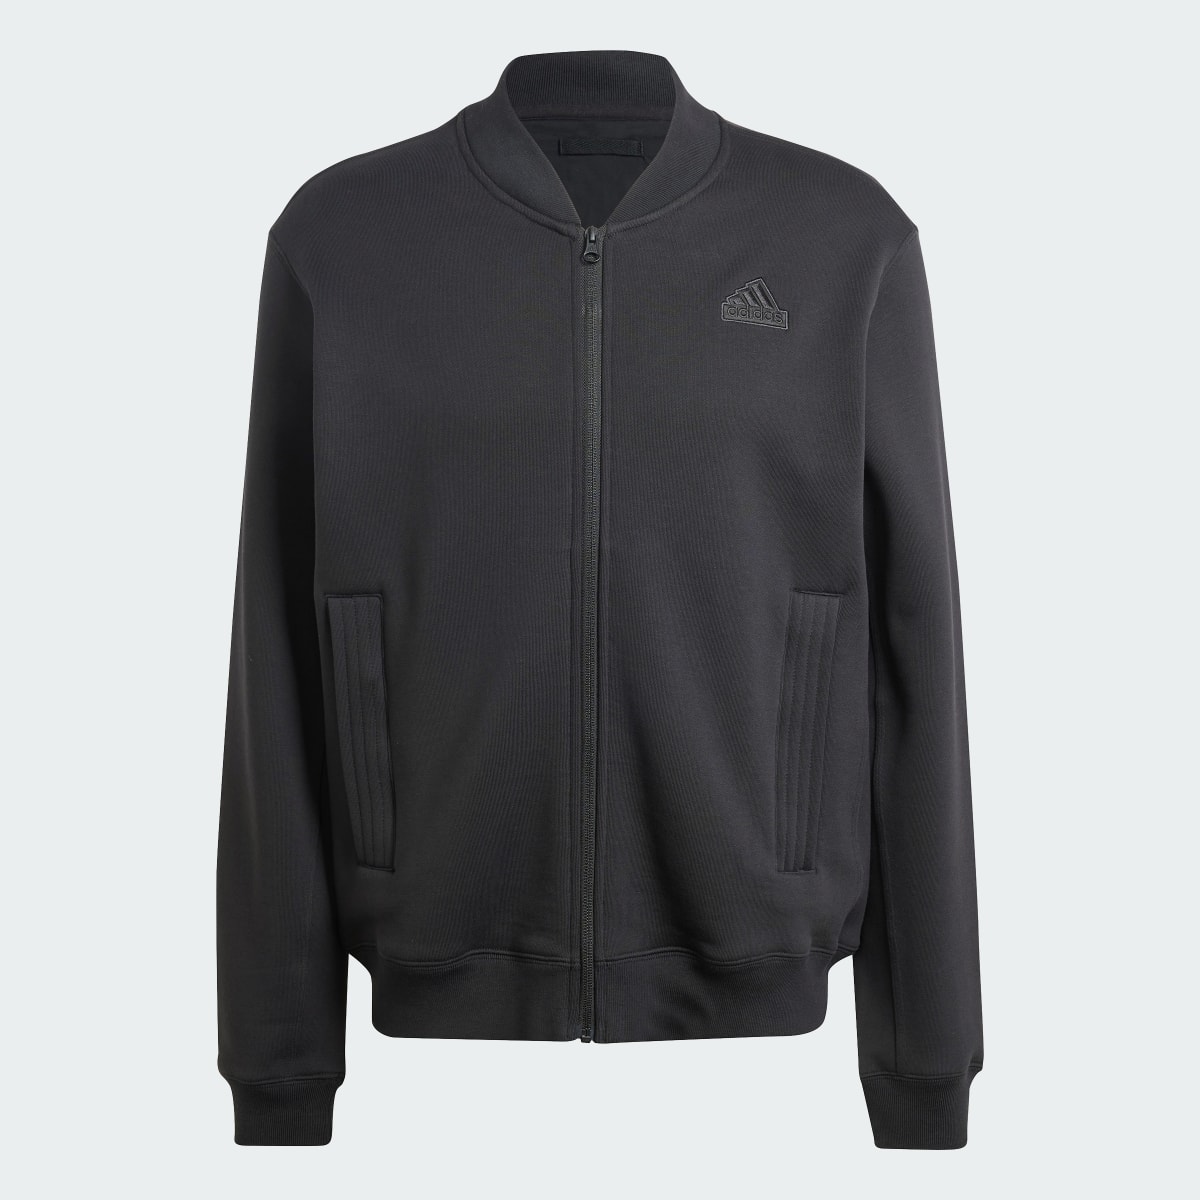 Adidas Lounge Fleece Bomber Jacket With Zip Opening. 5